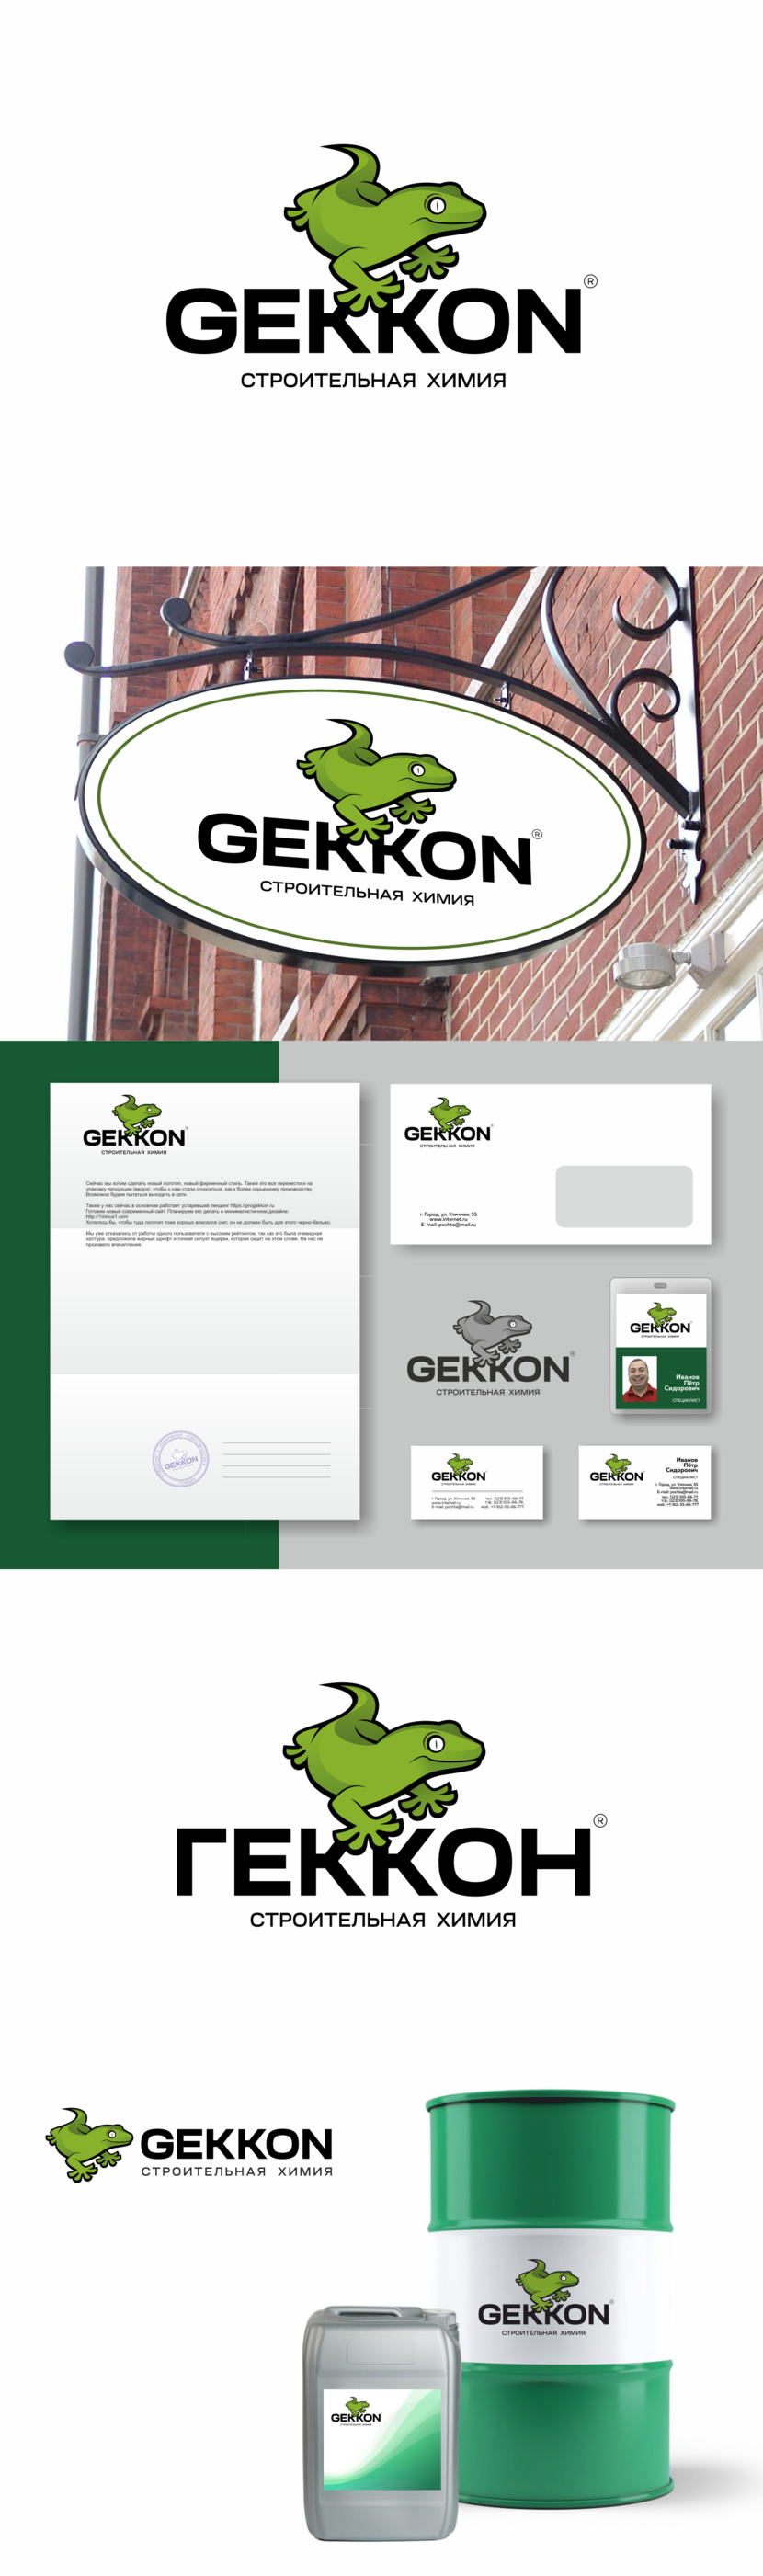 . - Логотип для производства полиуретановых материалов марки "Gekkon"